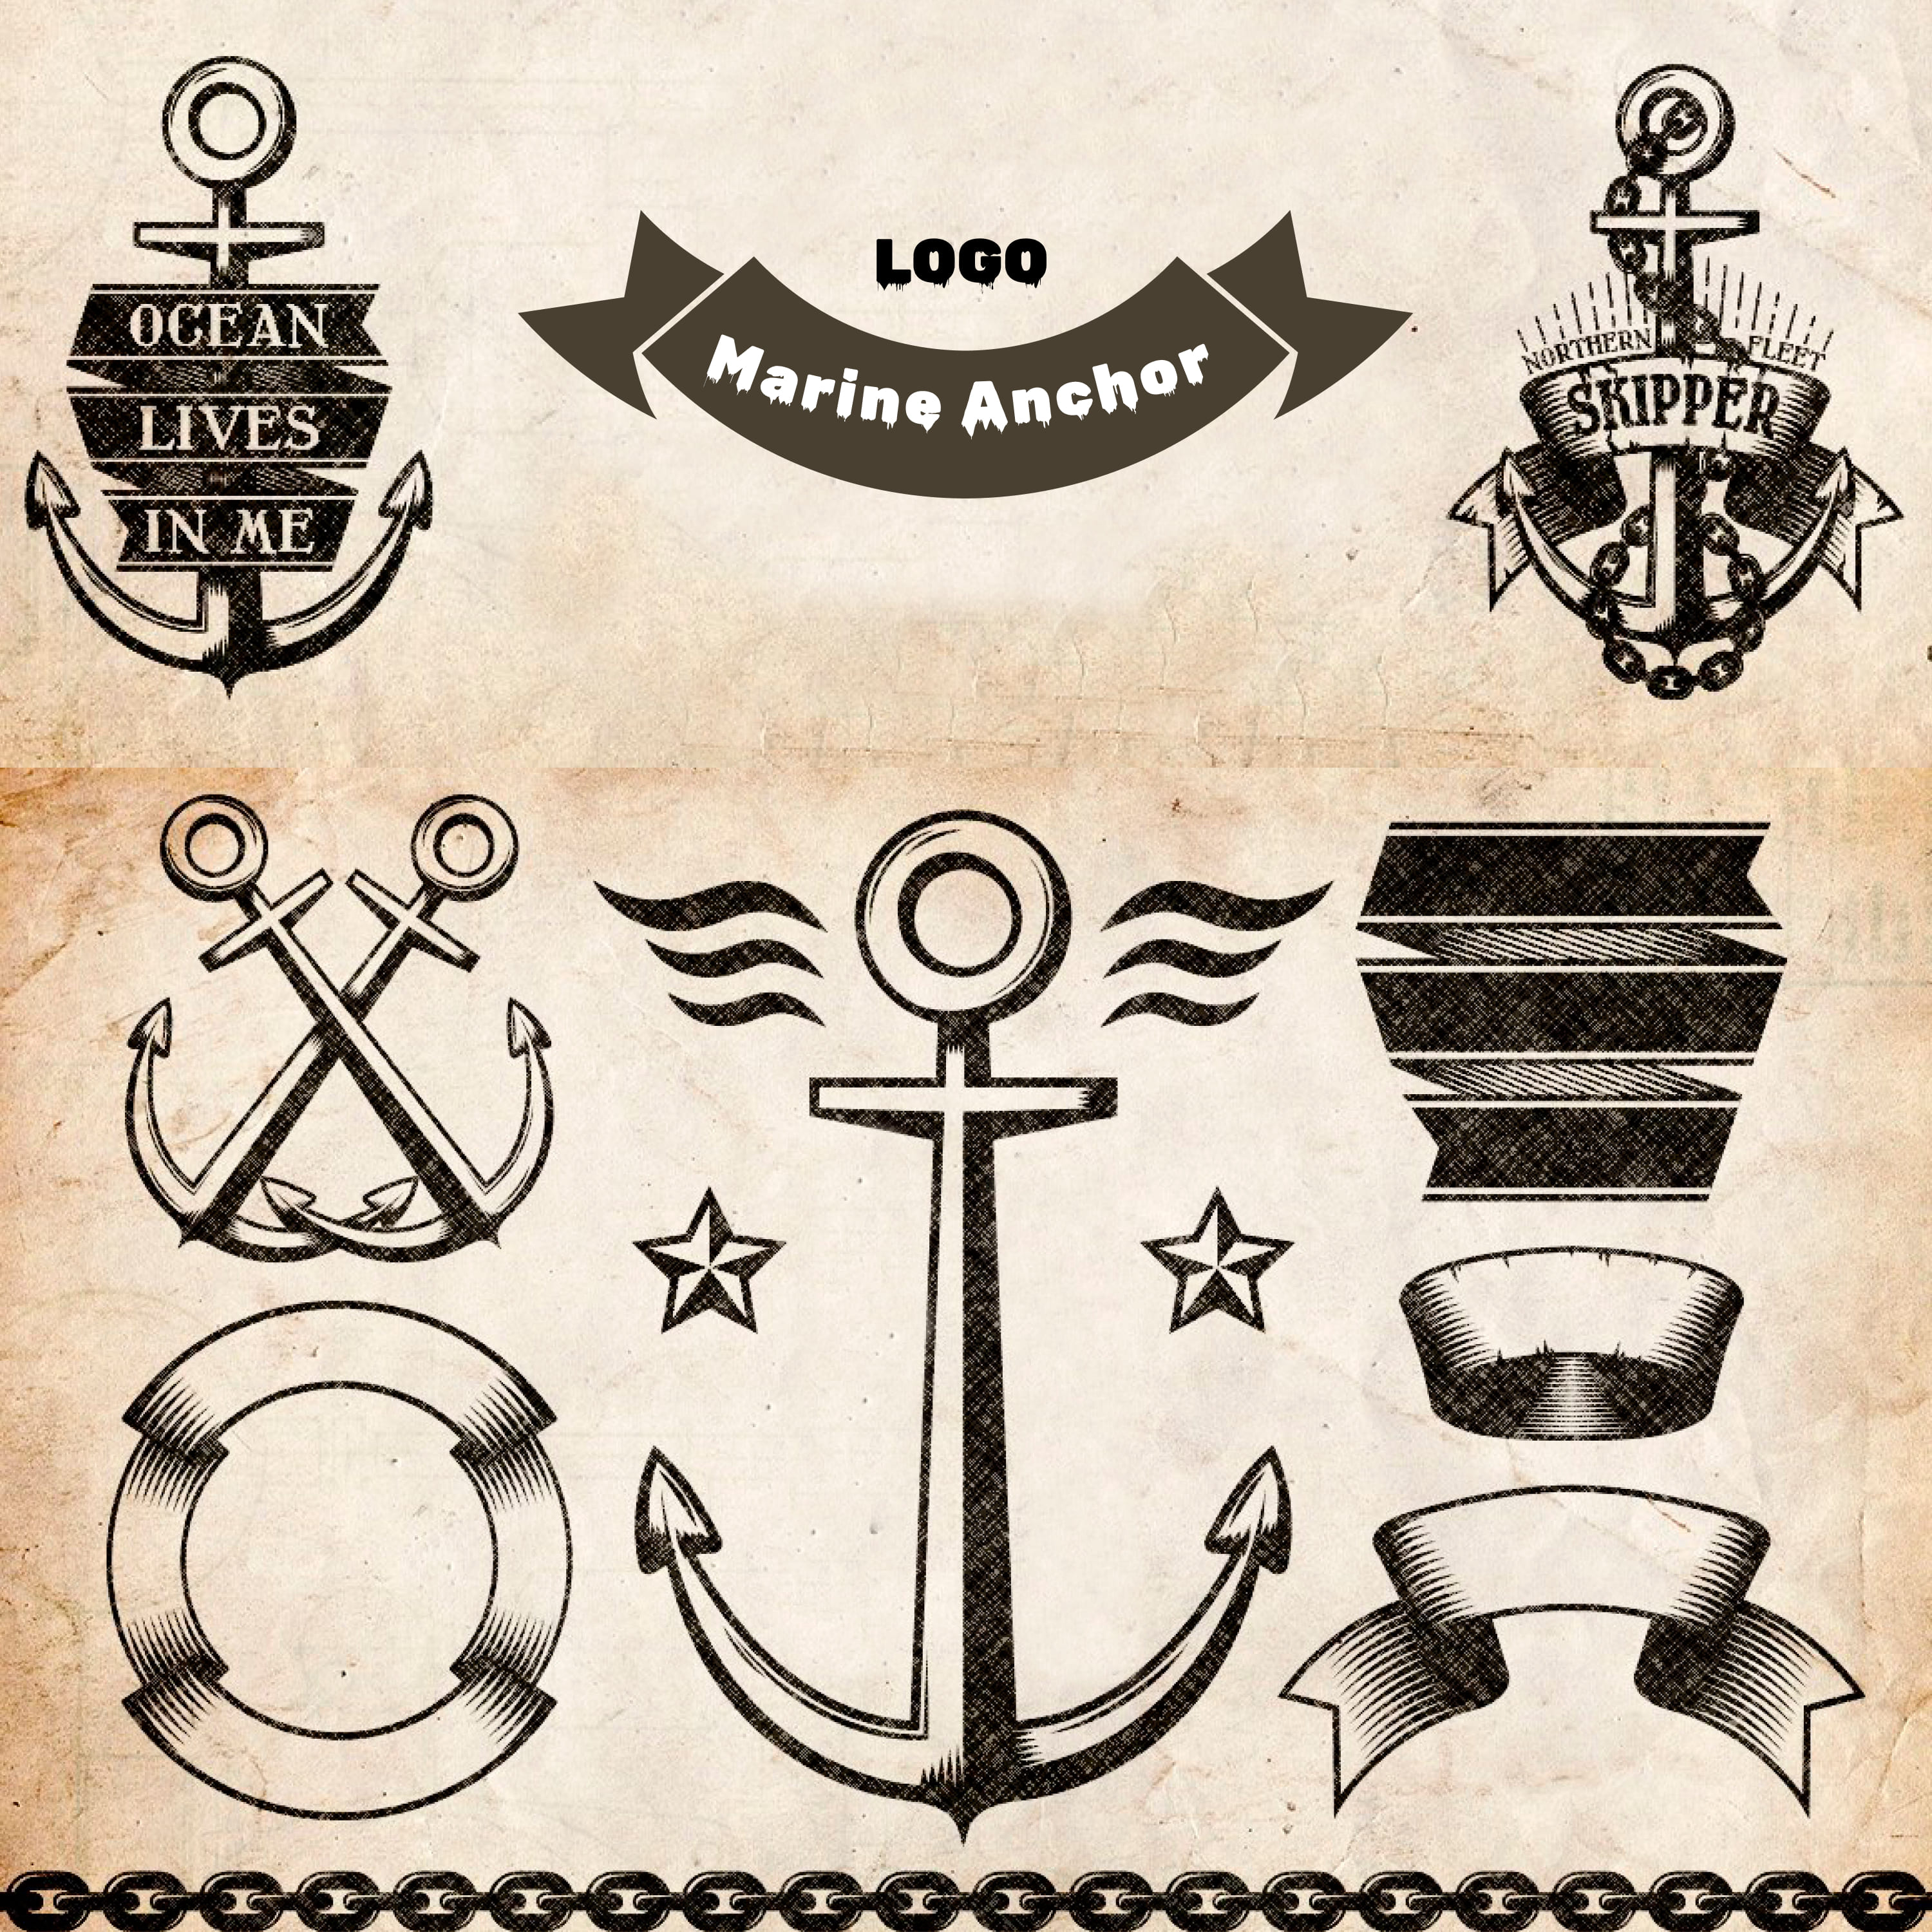 Marine Anchor Logos cover.